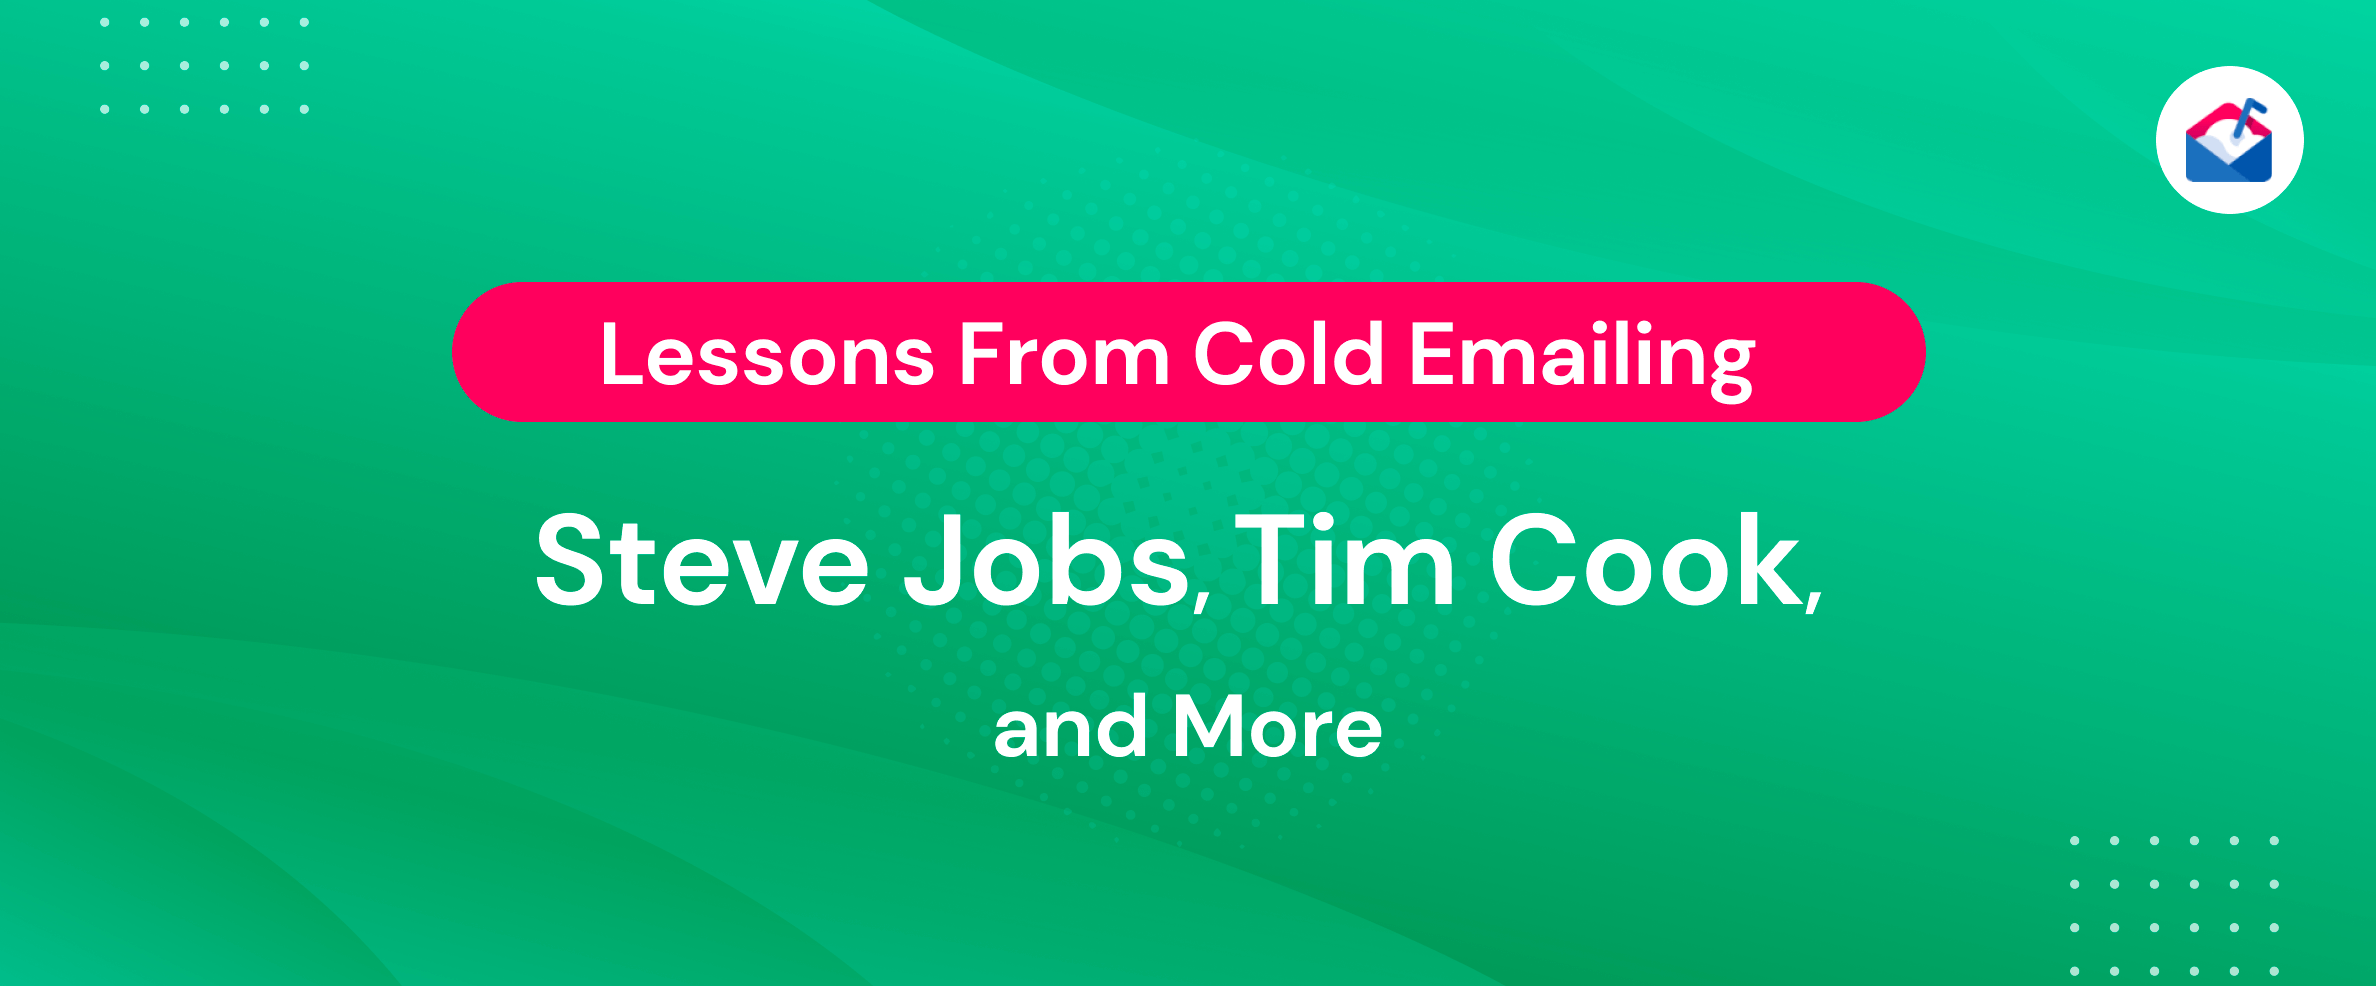 دروس من Cold Emailing Steve Jobs و Tim Cook والمزيد